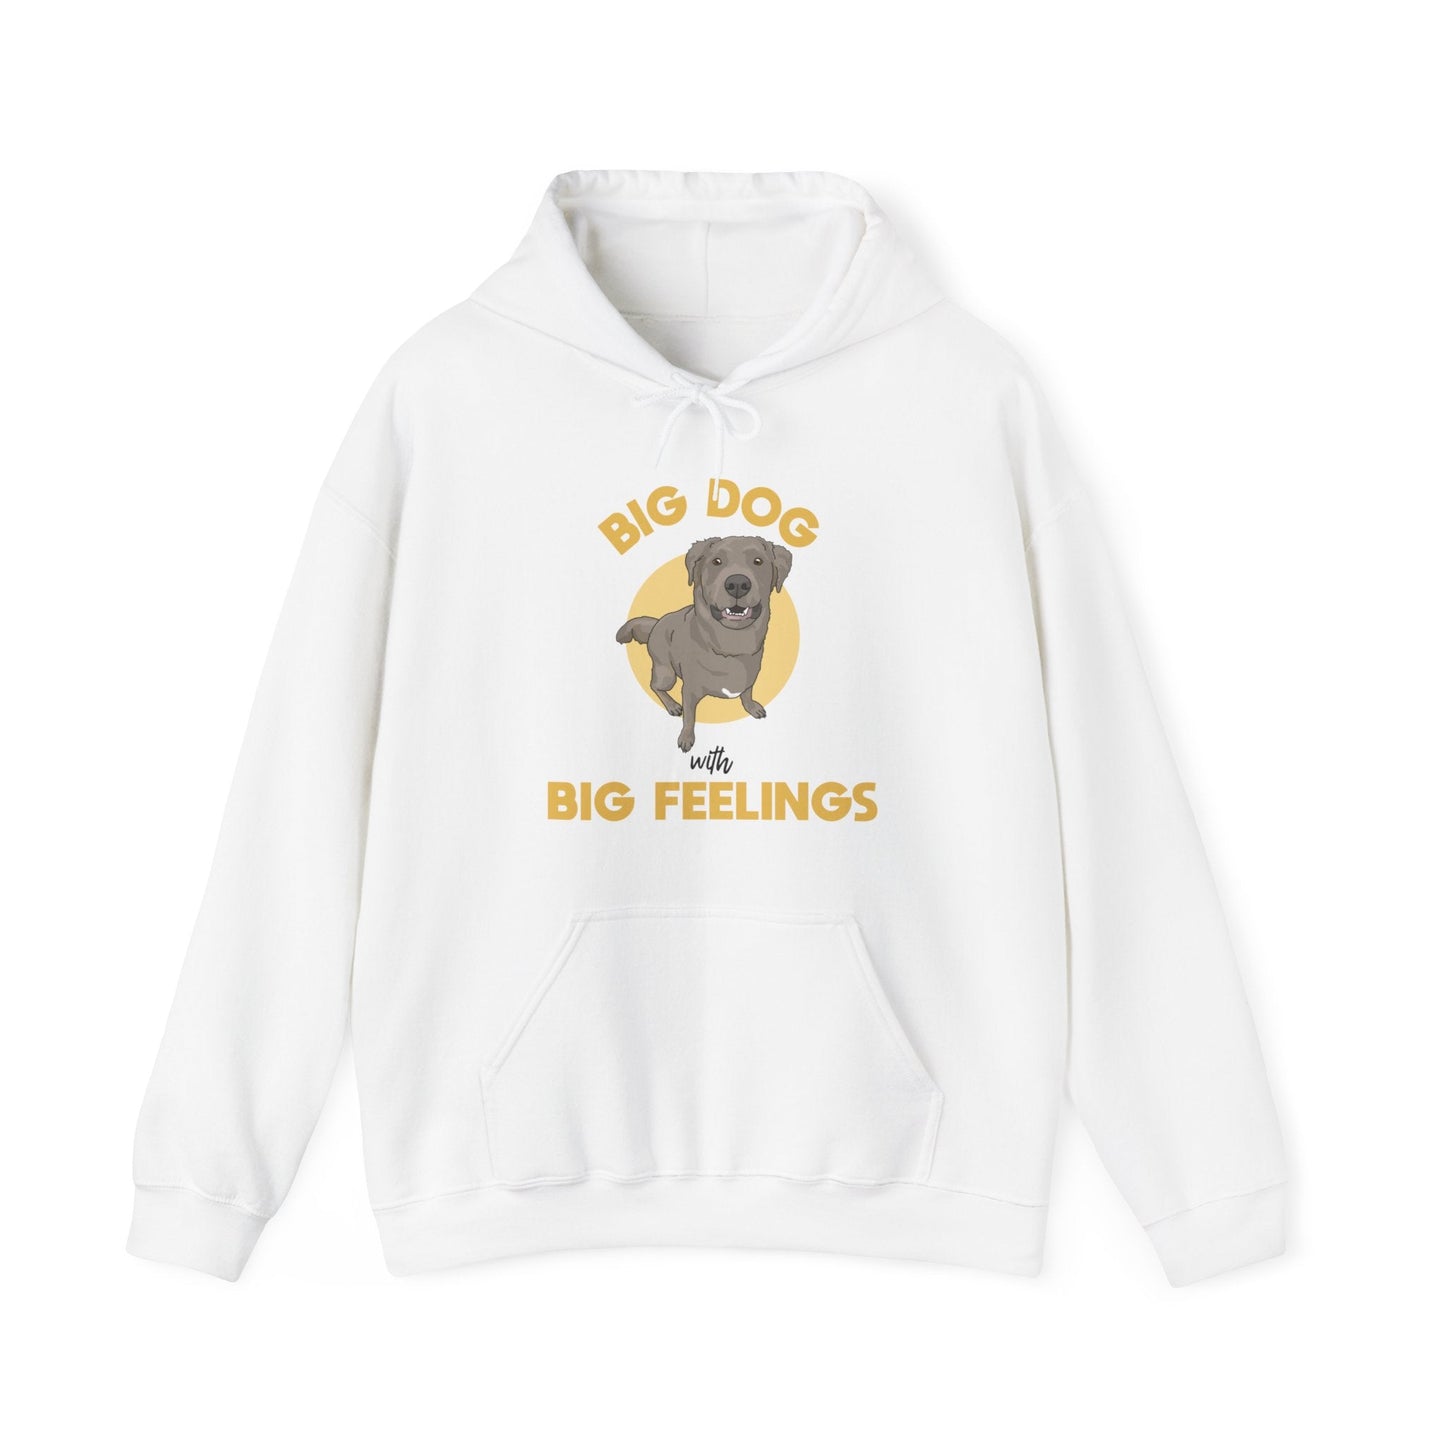 Big Dog With Big Feelings | Hooded Sweatshirt - Detezi Designs-25599545128129822213